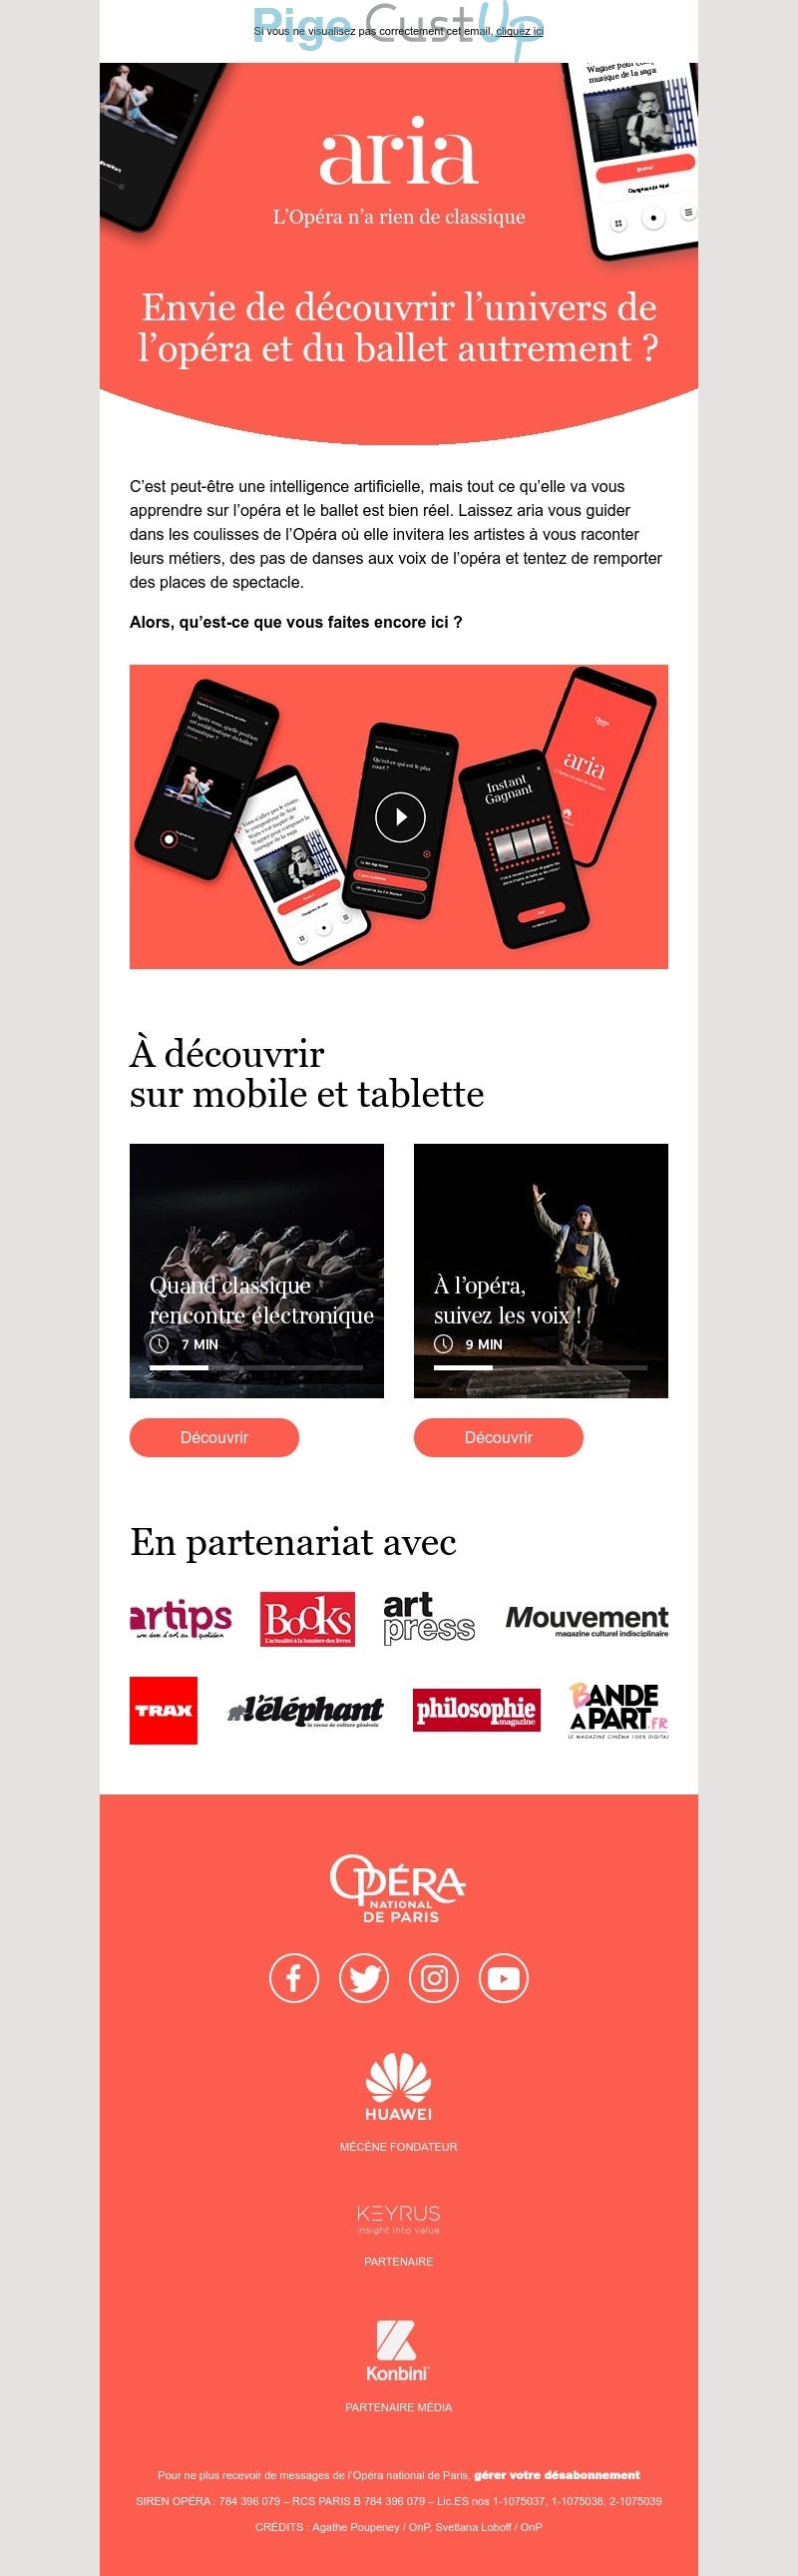 Exemple de Type de media  e-mailing - Opéra de Paris - Marketing marque - Communication Services - Nouveaux Services